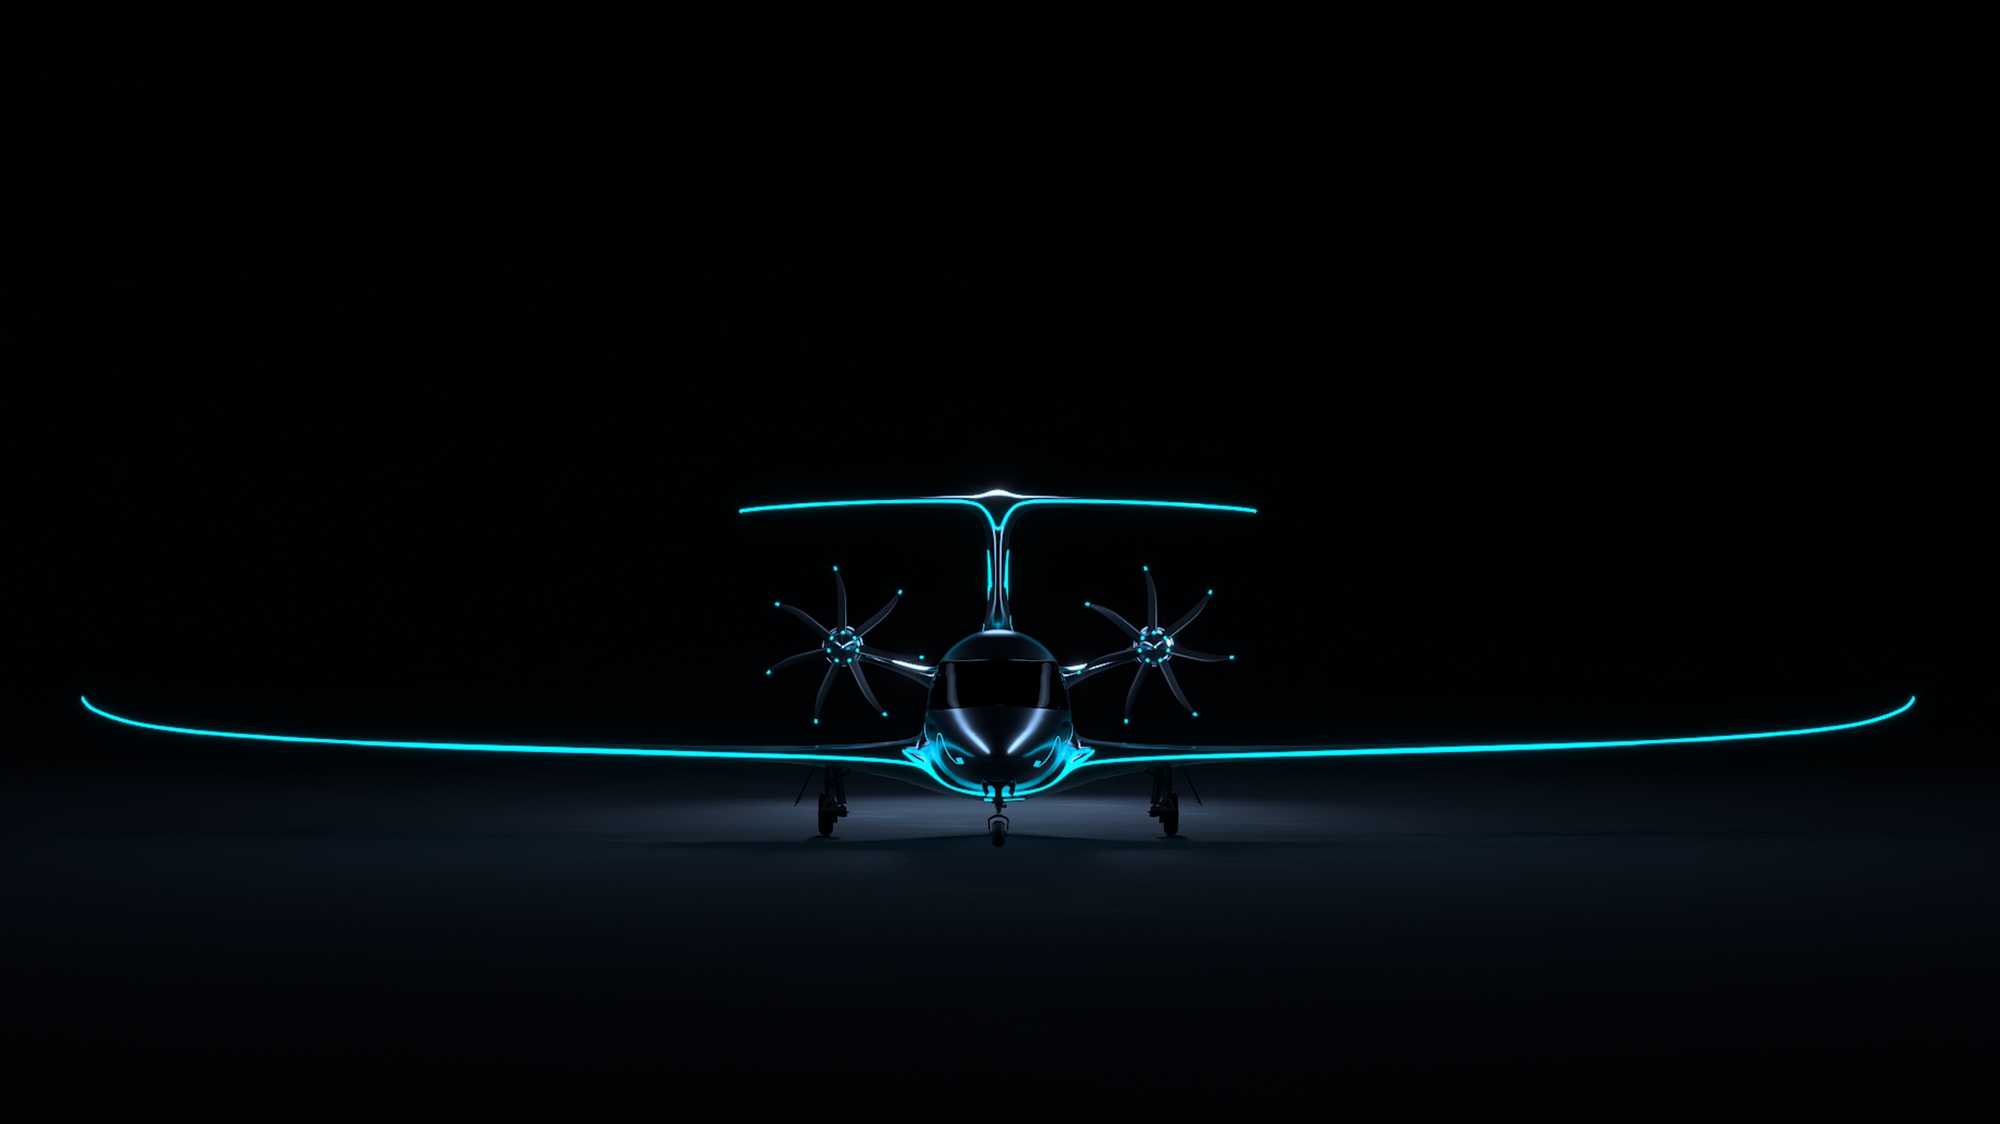 Concept aeroplane on a dark background